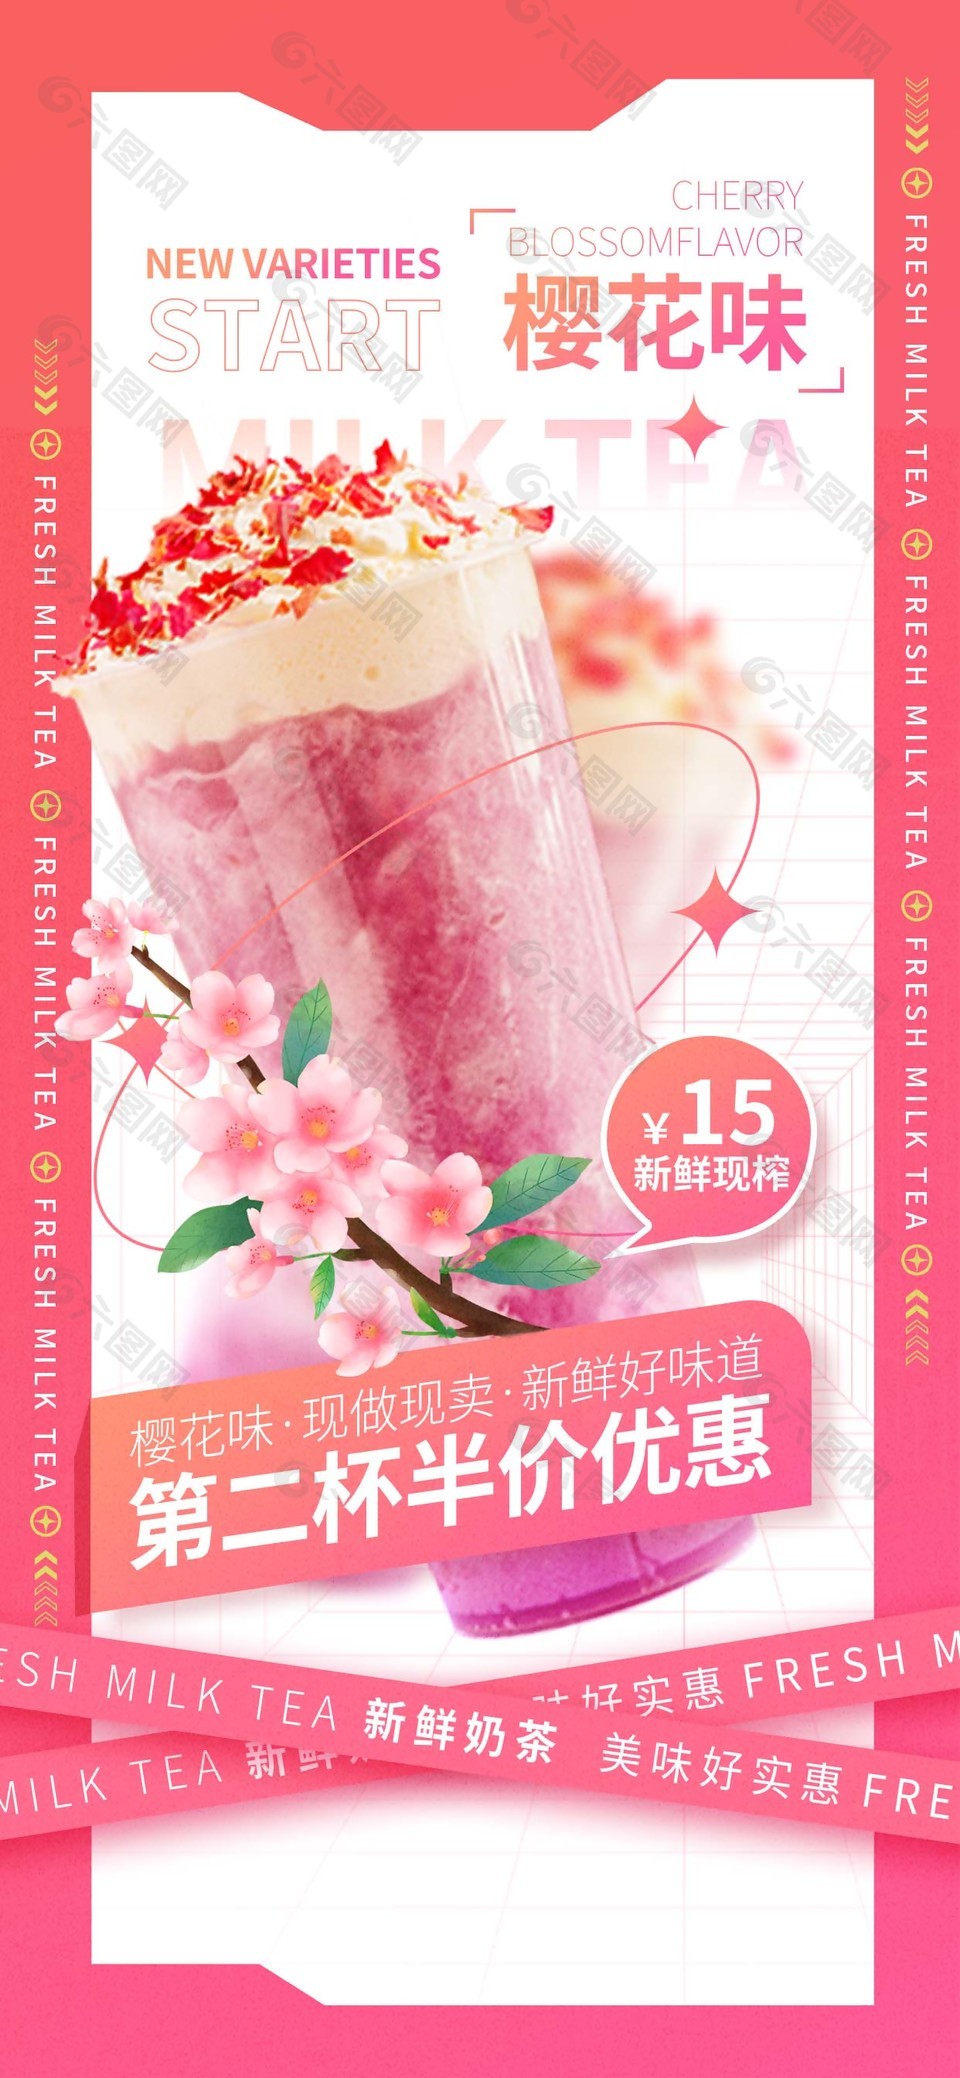 创意樱花味奶茶海报设计素材